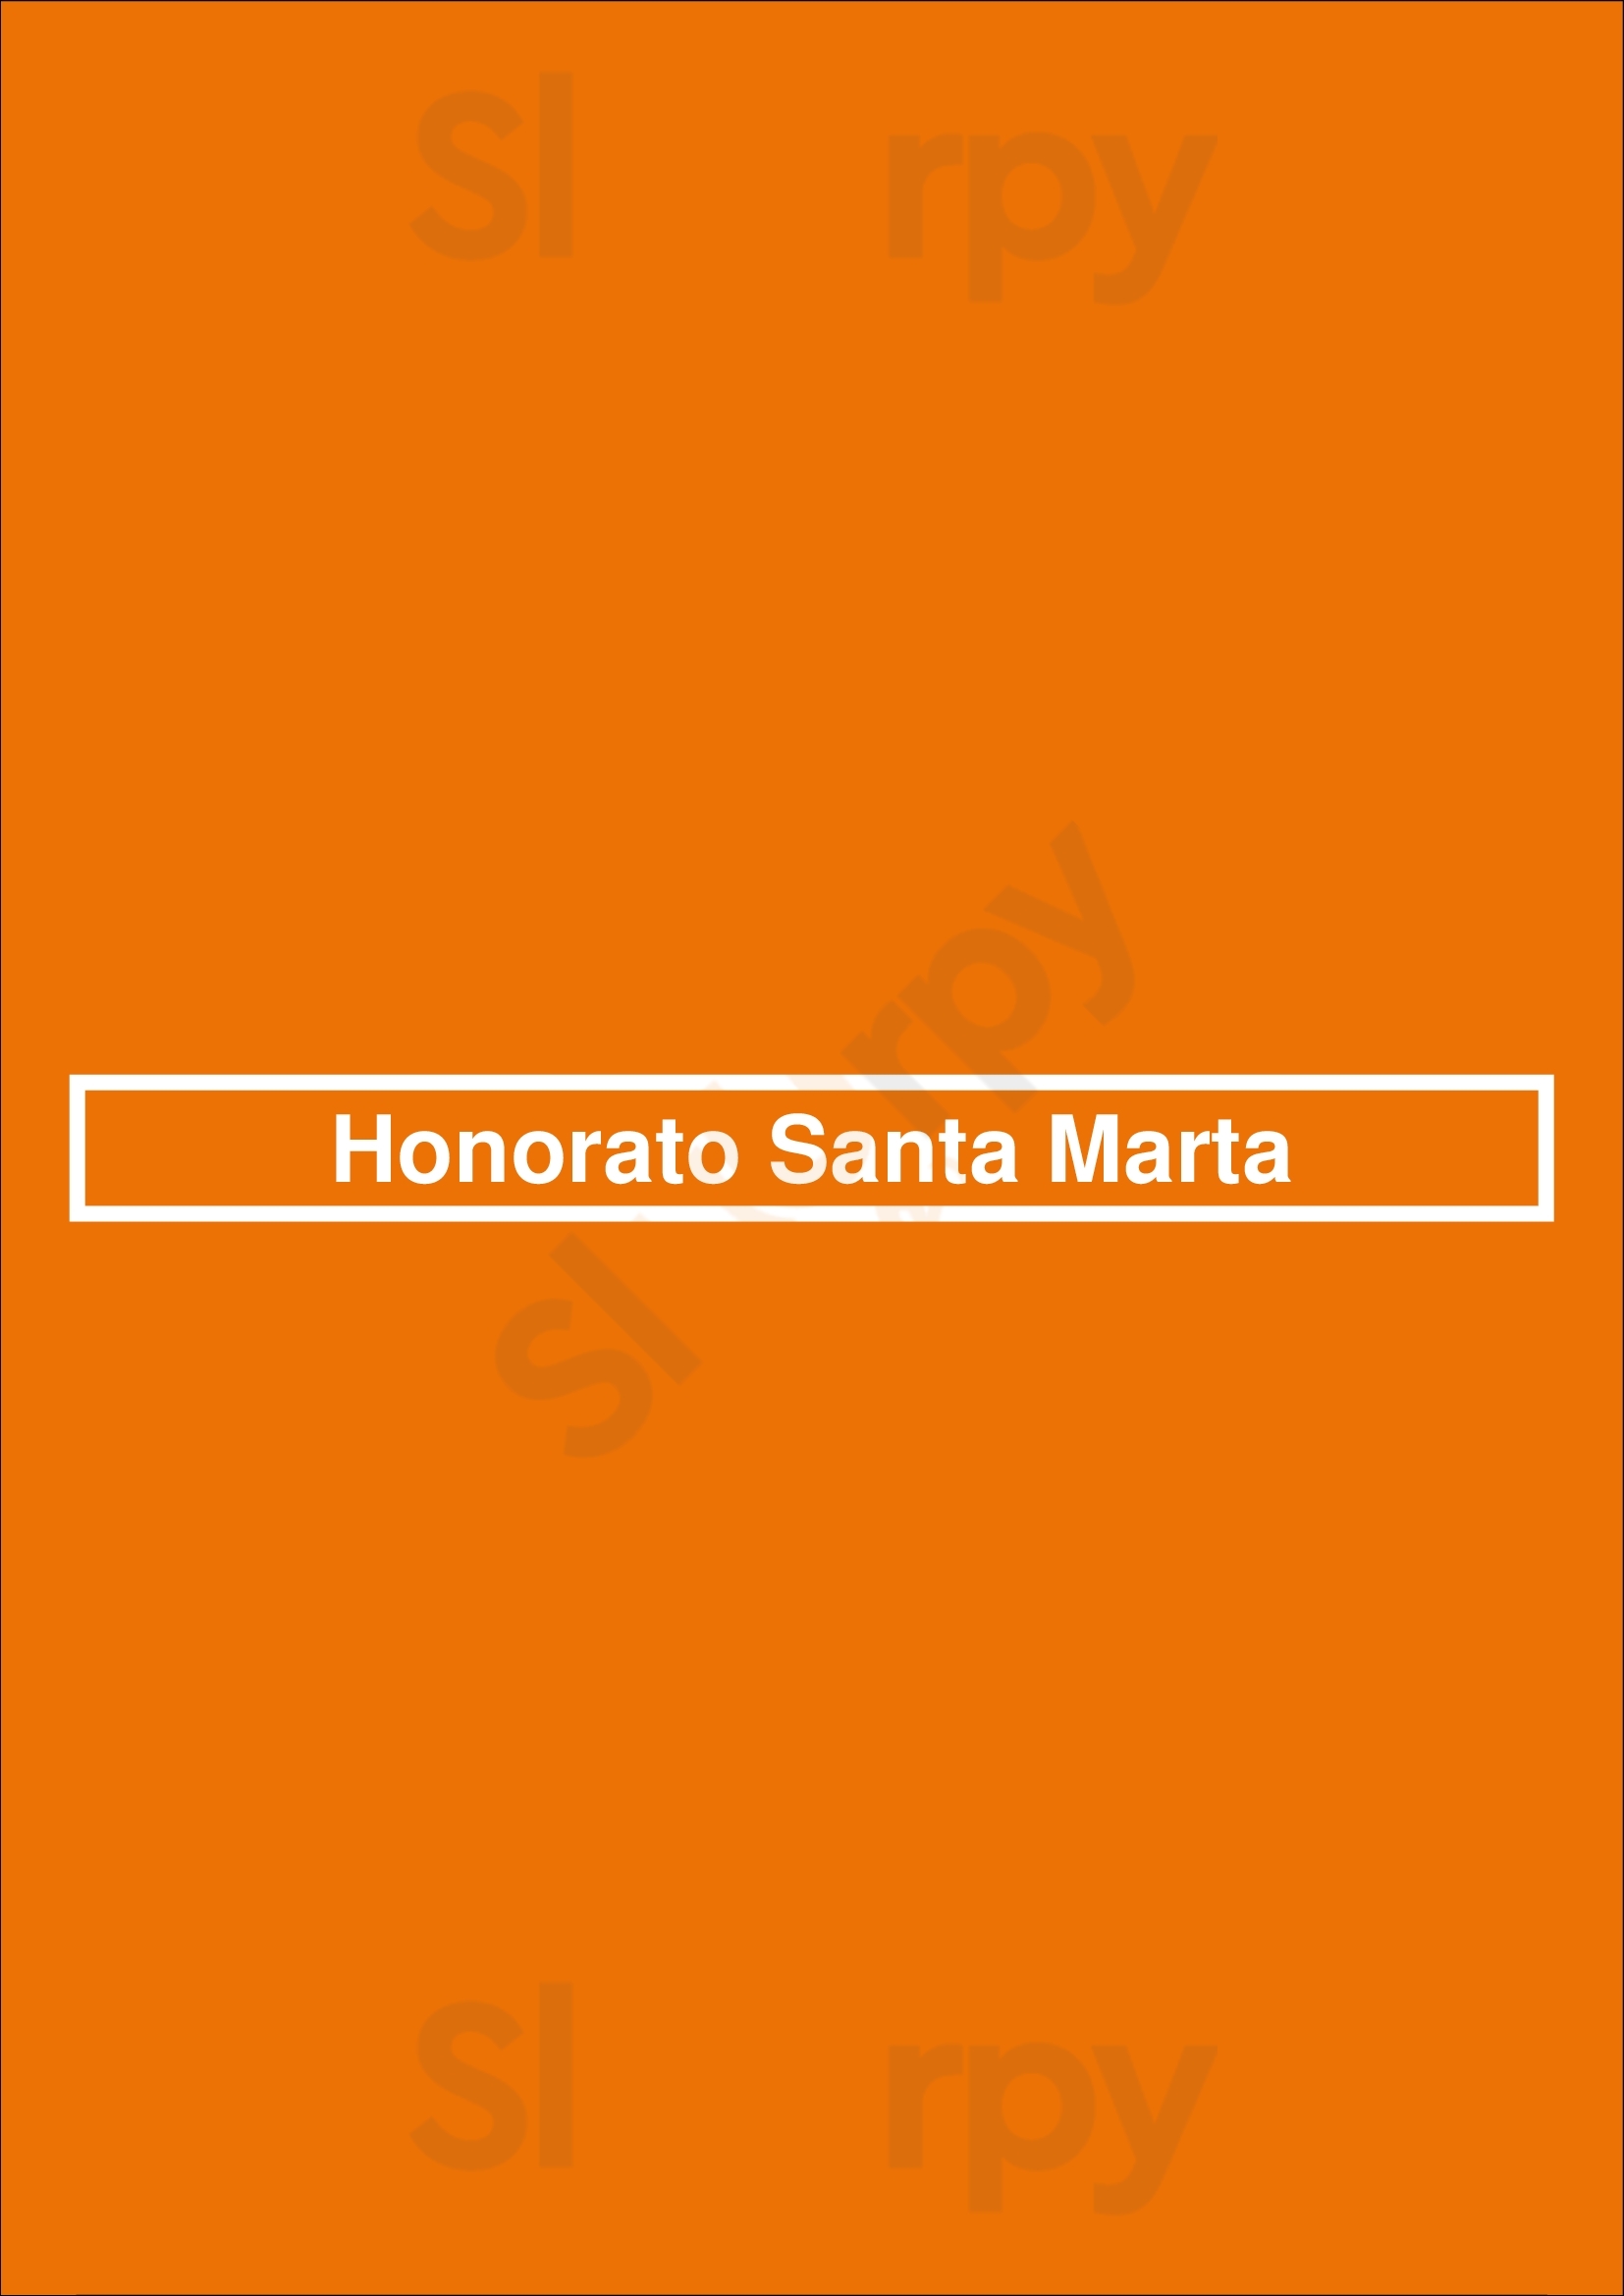 Honorato Santa Marta Lisboa Menu - 1